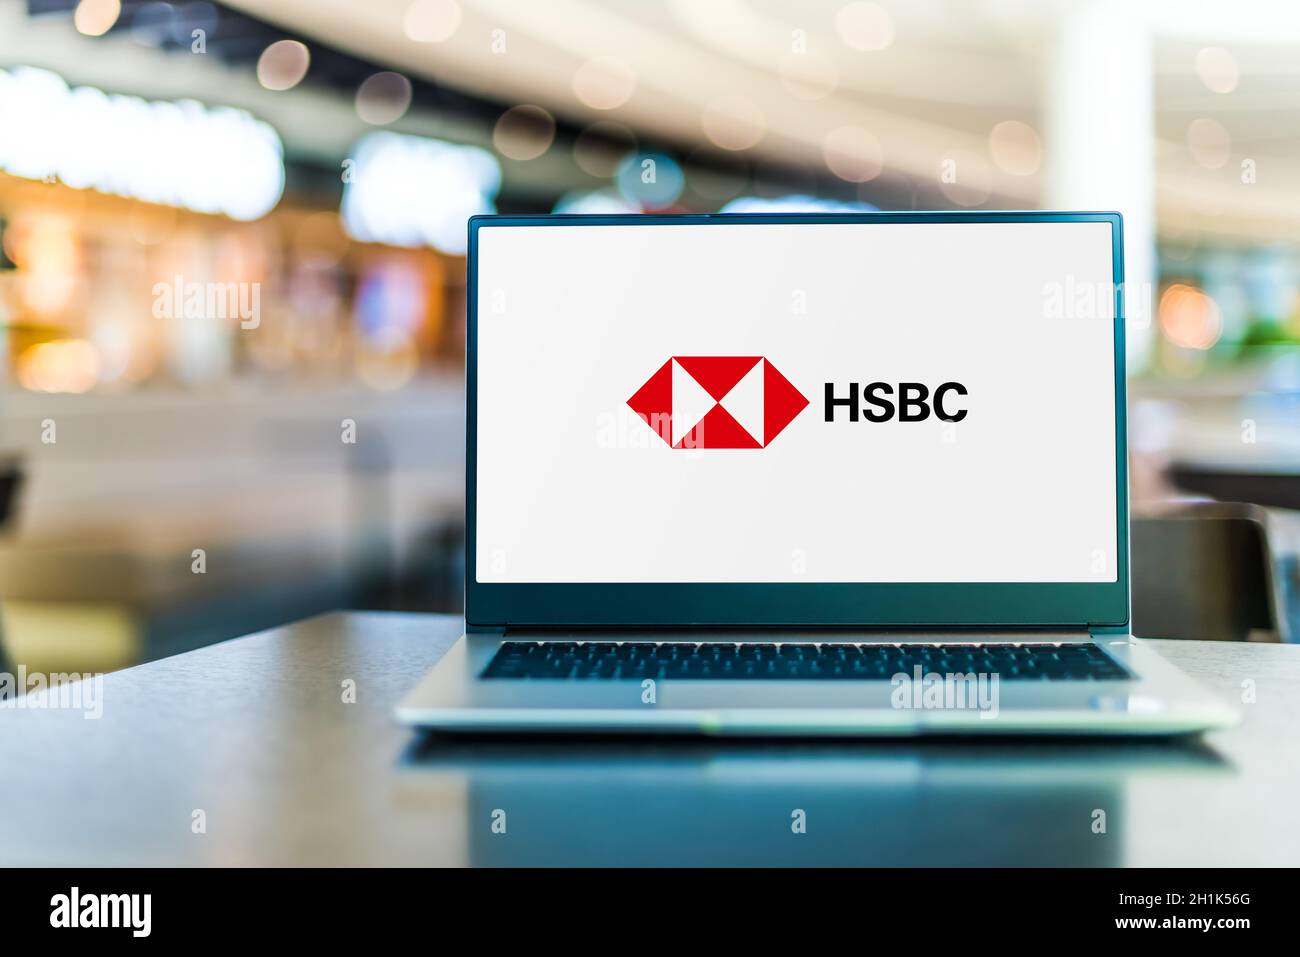 POZNAN, POL - SEP 23, 2020 : ordinateur portable affichant le logo de HSBC Holdings plc, une banque d'investissement multinationale britannique et holdi de services financiers Banque D'Images